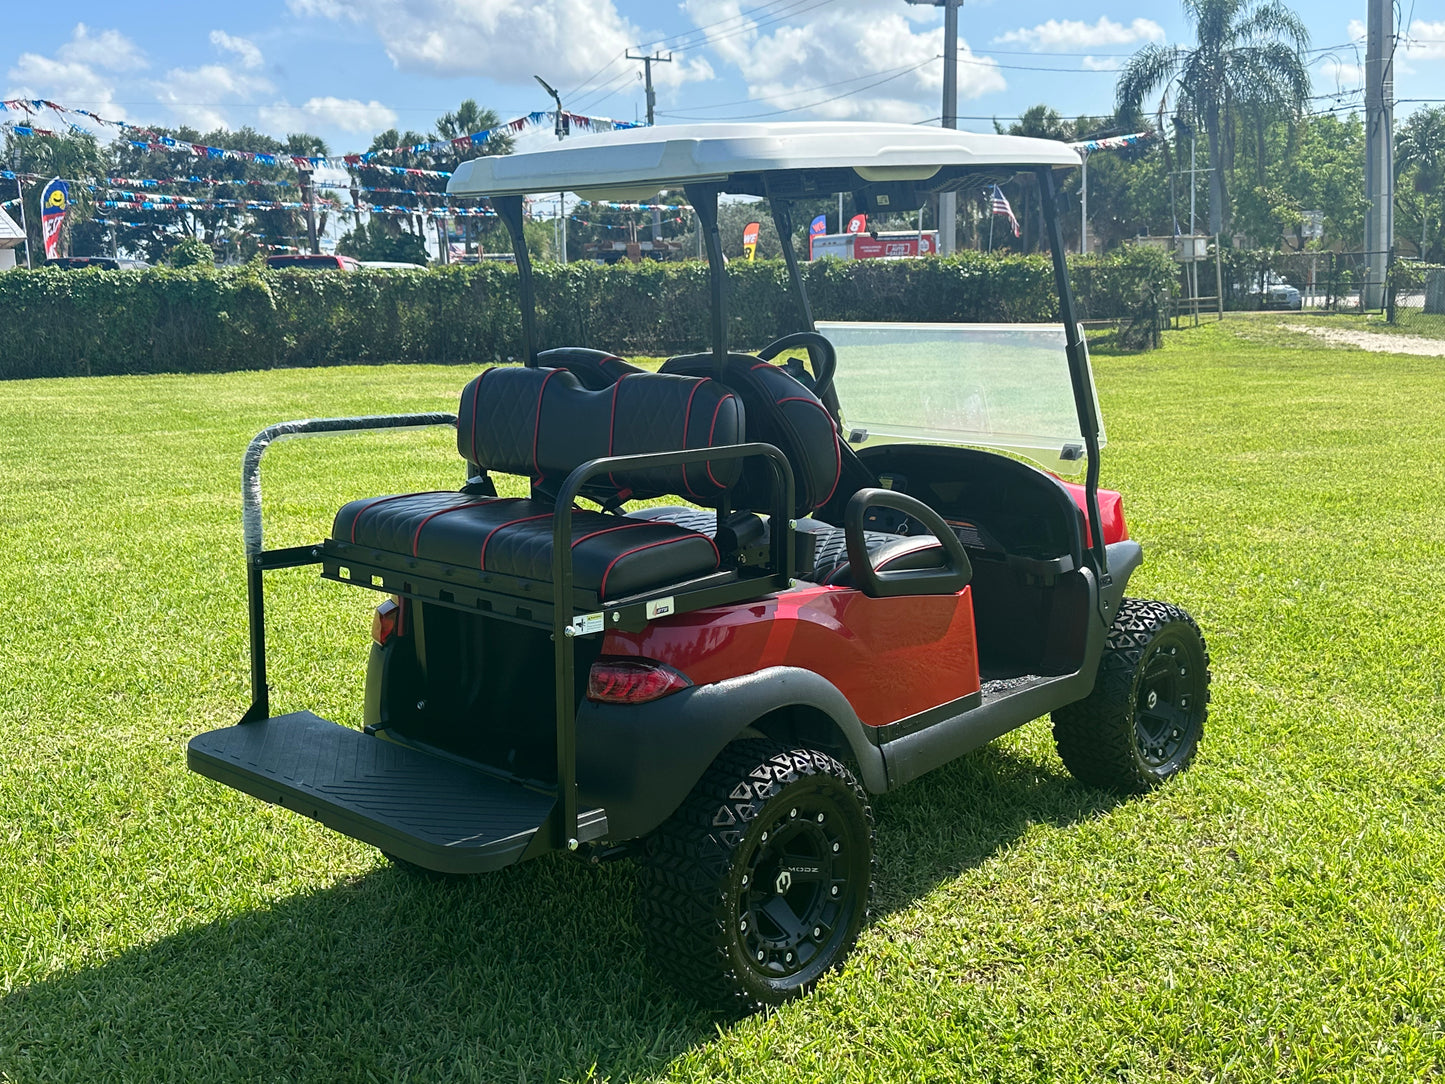 Cutting Edge Golf Carts - 2020 Lamborghini Red Club Car Tempo in Fort Lauderdale, FL. MadJax 6" lift, custom leather seats, rear backseat, Modz wheels, 23" AT tires, MadJax Lux lights, RGB running lights, seatbelts, LED mirrors.



